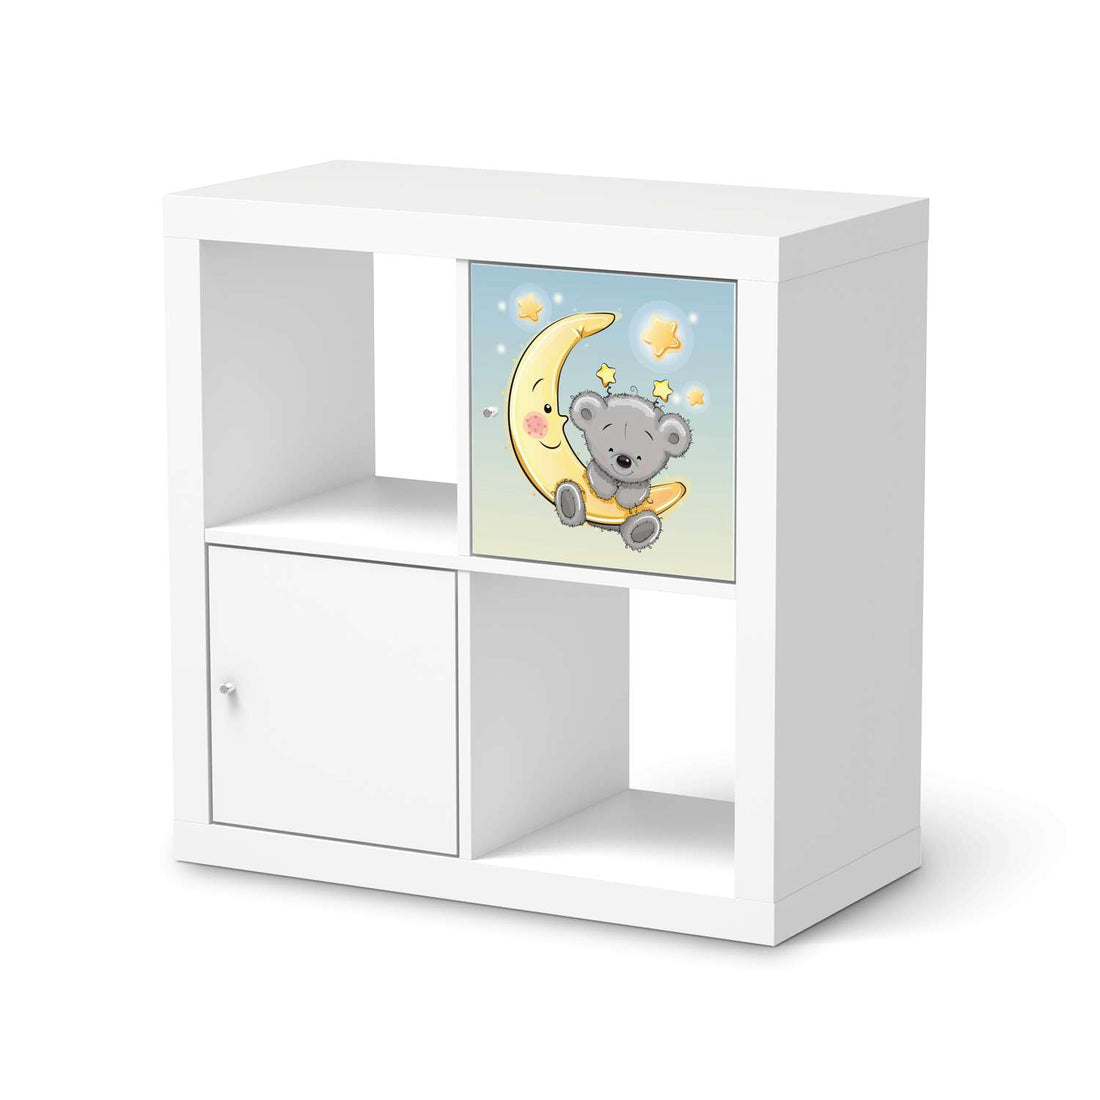 Selbstklebende Folie Teddy und Mond - IKEA Kallax Regal 1 Türe  - weiss